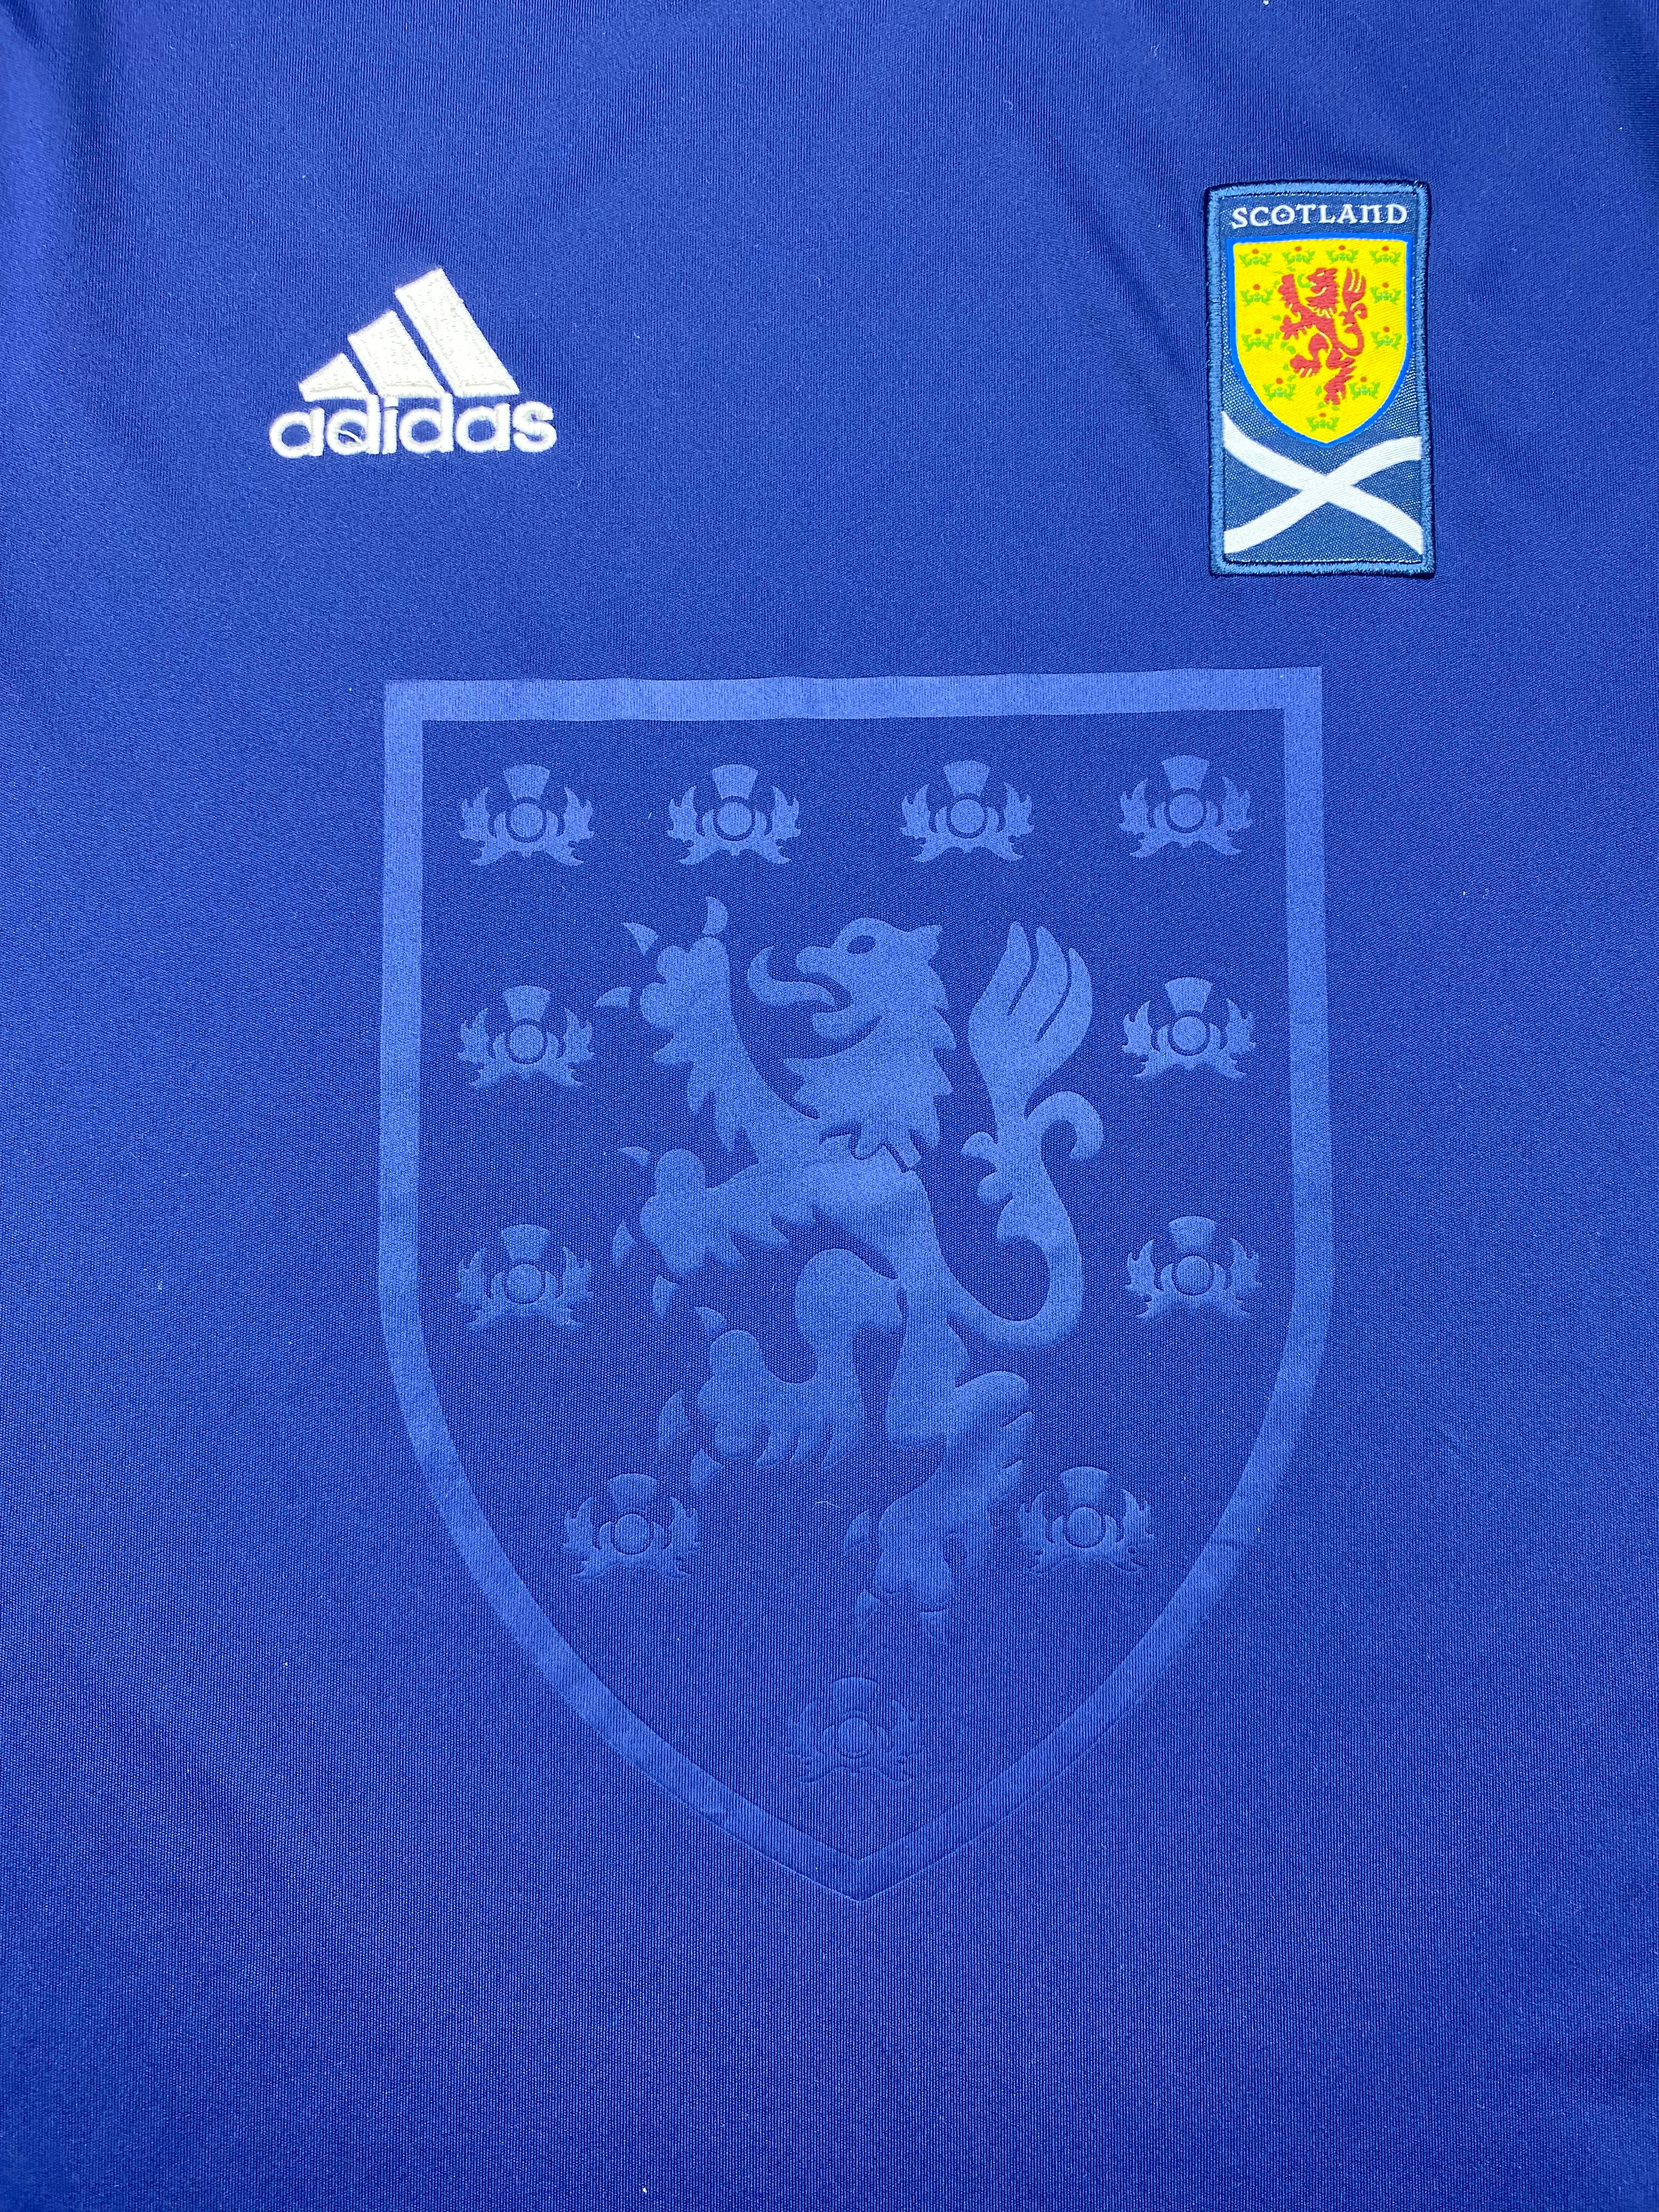 2010/11 Scotland Home Shirt (M) 9/10